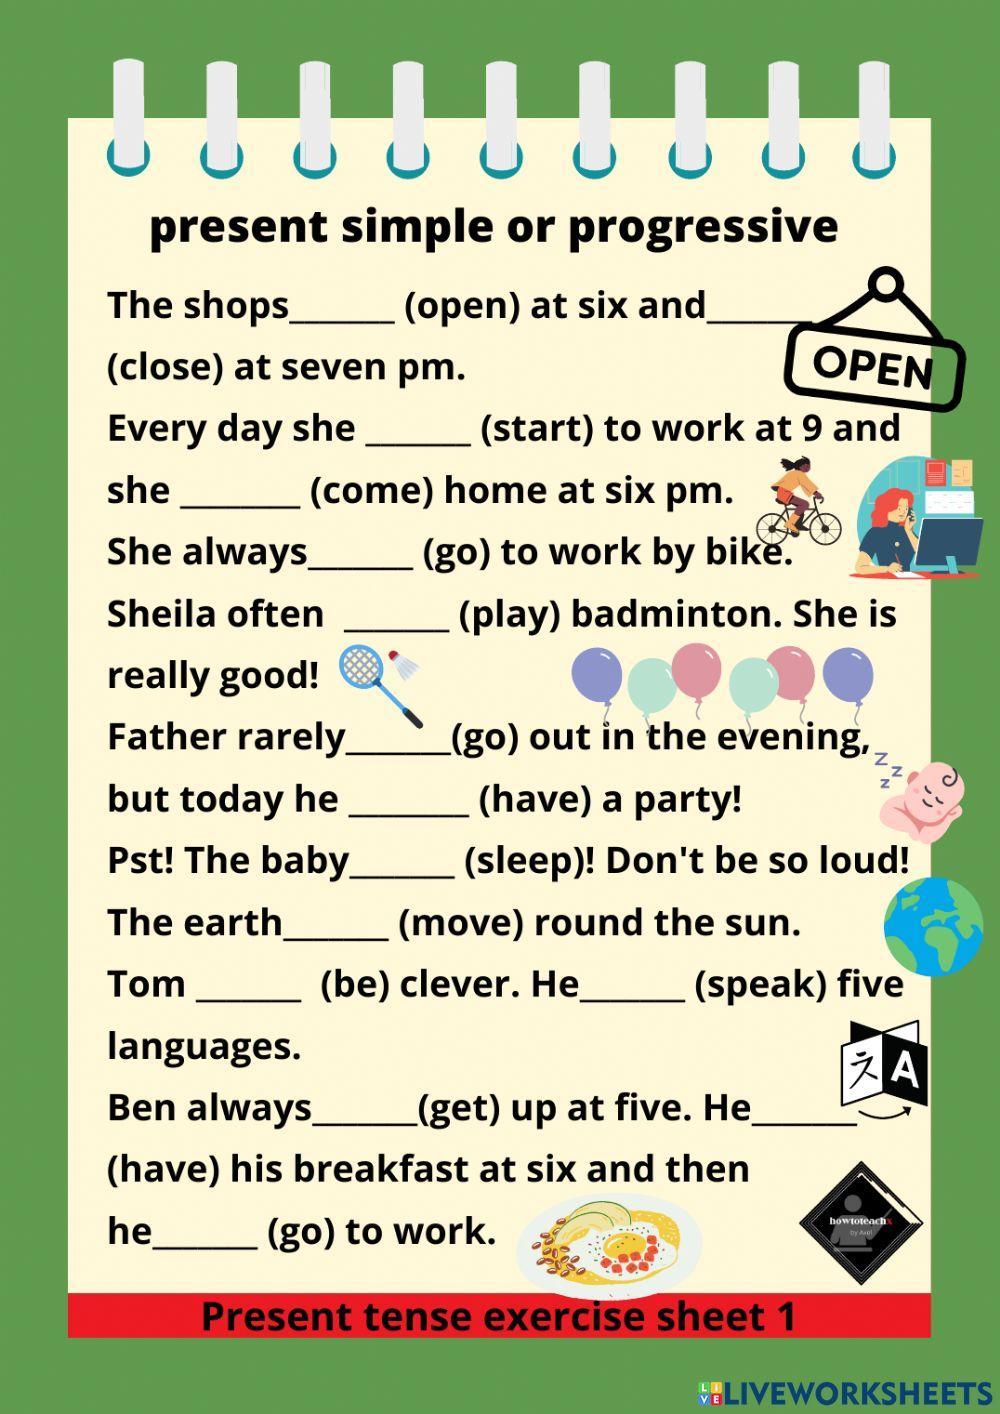 Present simple or progressive